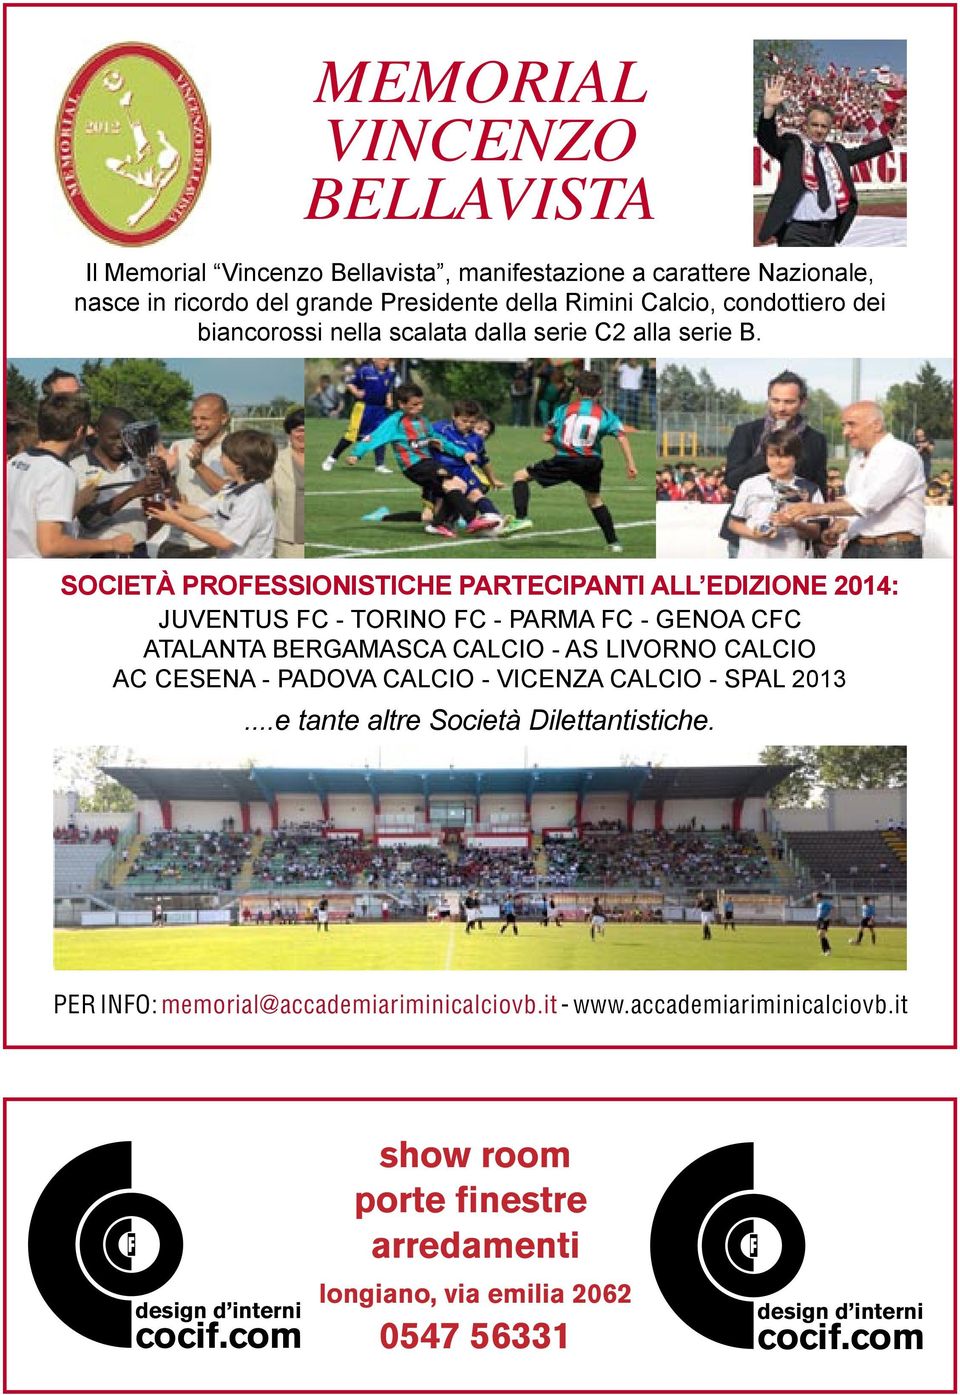 SOCIETÀ PROFESSIONISTICHE PARTECIPANTI ALL EDIZIONE 2014: JUVENTUS FC - TORINO FC - PARMA FC - GENOA CFC ATALANTA BERGAMASCA CALCIO - AS LIVORNO CALCIO AC CESENA - PADOVA